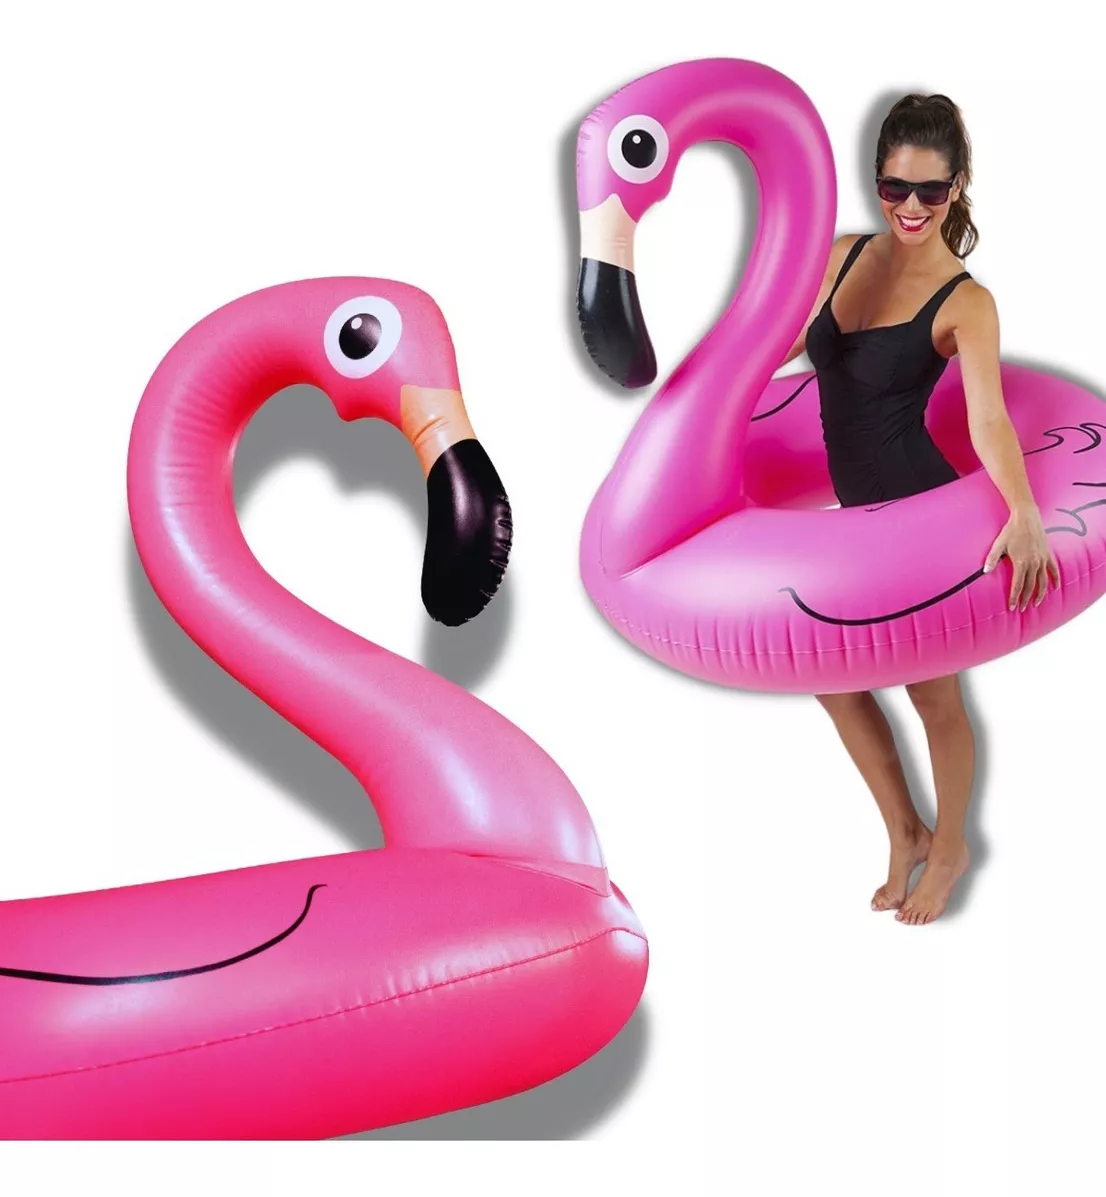 Segunda imagem para pesquisa de boia flamingo